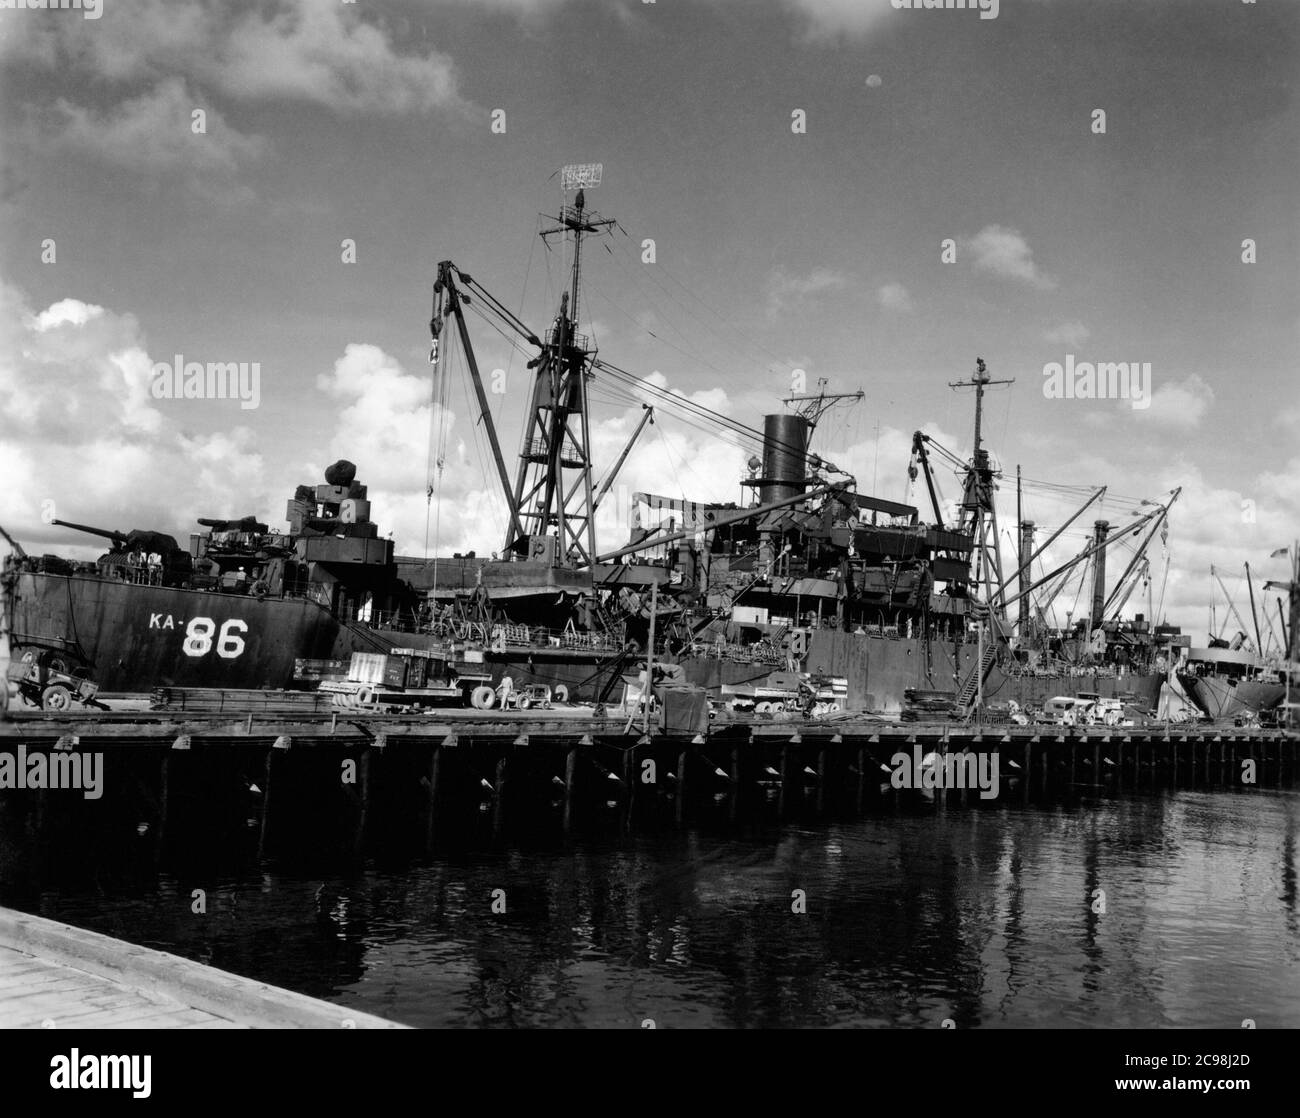 AKA-86 U.S.S. Woodford, Entladen von Fracht in Apre Harbor, Guam, 1945. Zum 75. Jahrestag des V-J Day hat die Consoli Collection vier Fotoessays von U.S. Navy LT. (j.g.) veröffentlicht. Joseph J. Consoli. Die Fotos wurden zwischen Juli und Dezember 1945 auf den Marianen aufgenommen. Sie dokumentieren das Leben der US-Marine vor und nach der japanischen Kapitulation. Stockfoto